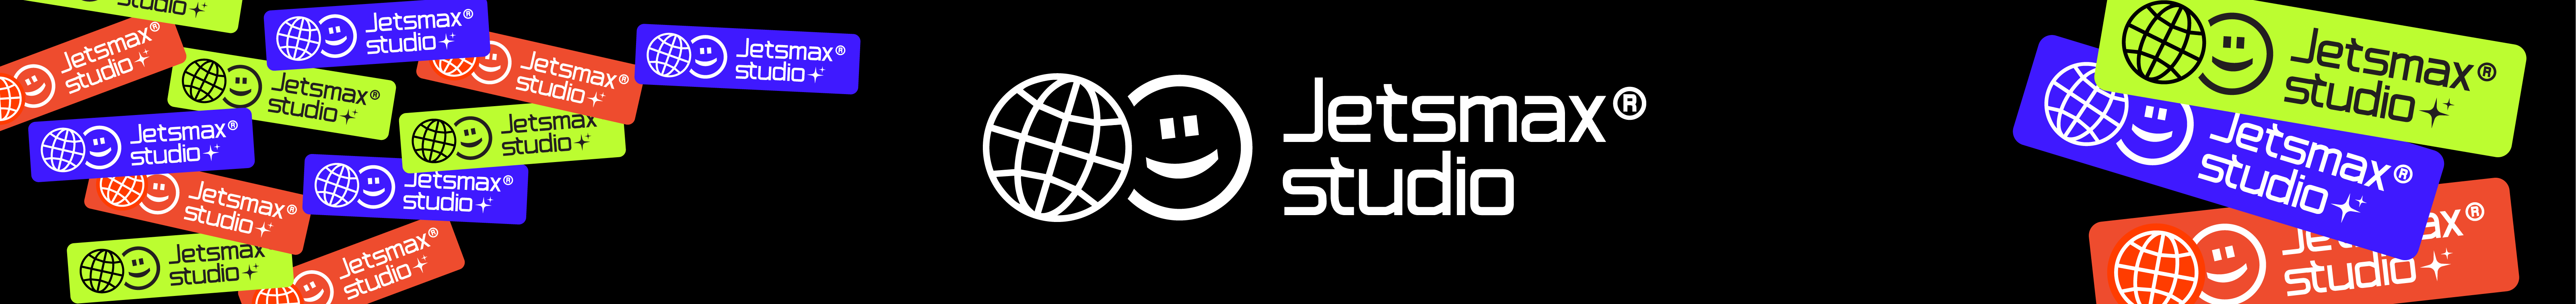 Bannière de profil de Jetsmax® Studio